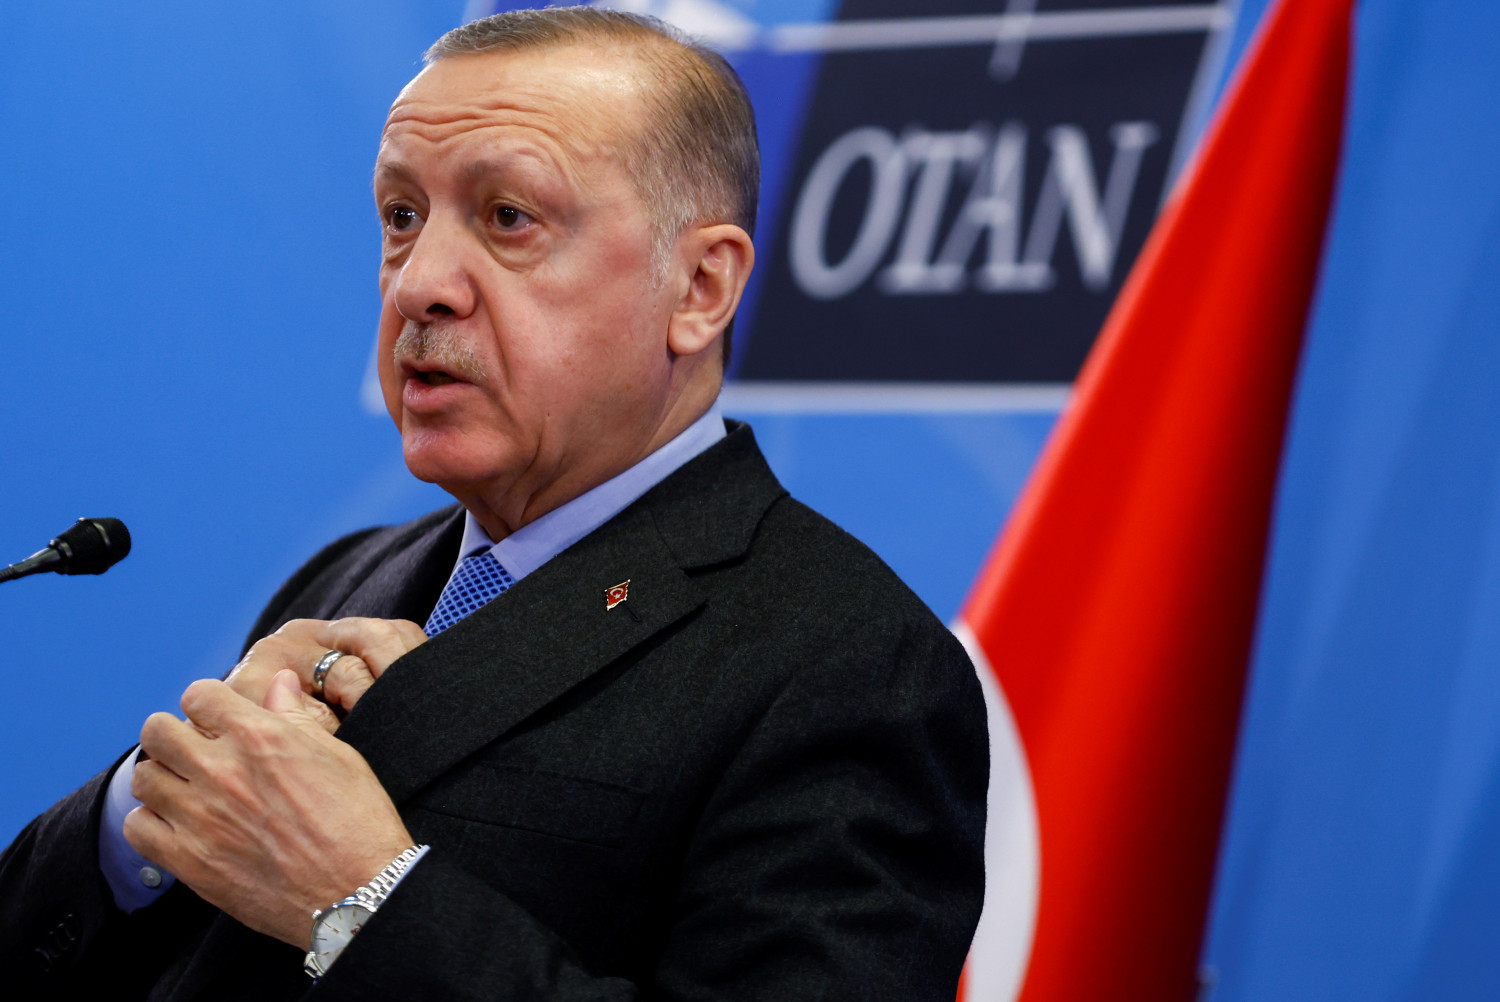 la turquie opposee a l adhesion de la finlande et de la suede a l otan dit erdogan 